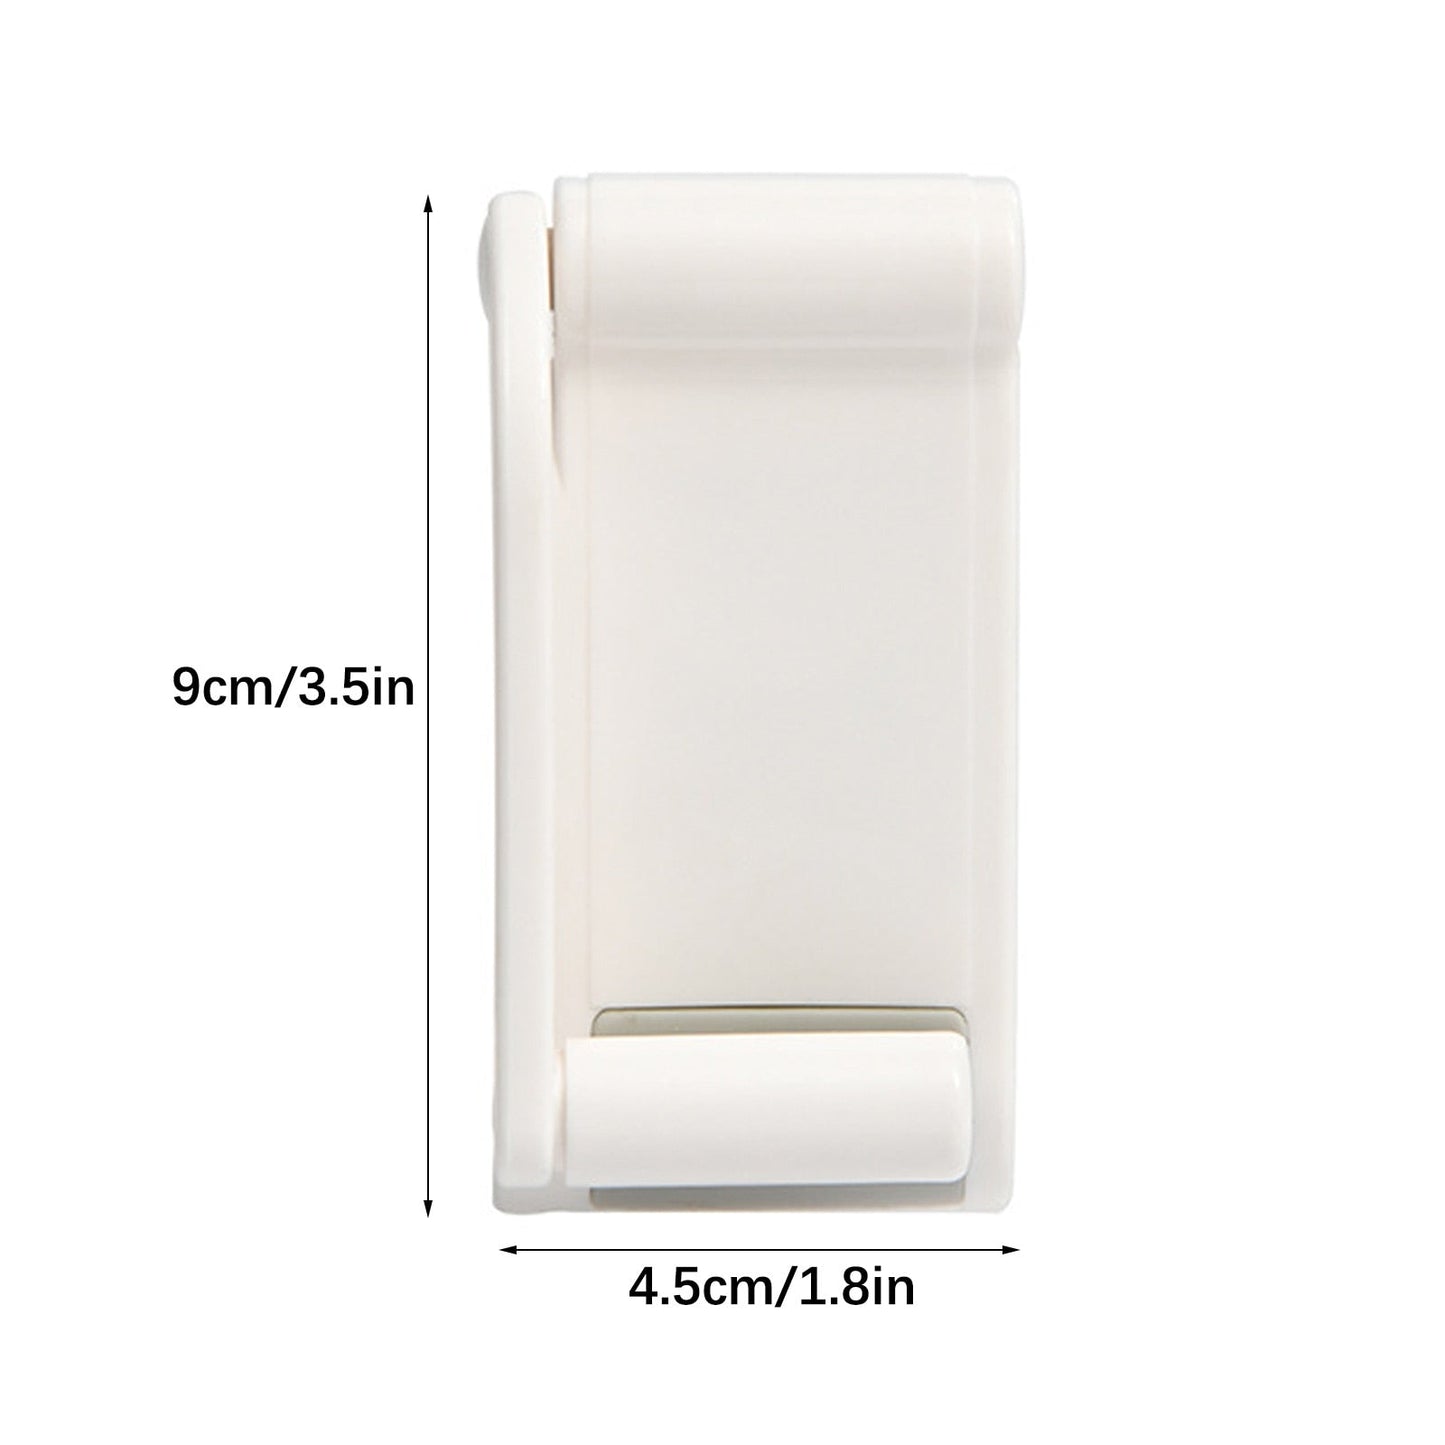 Adjustable Magnetic Paper Towel Cloth Holder